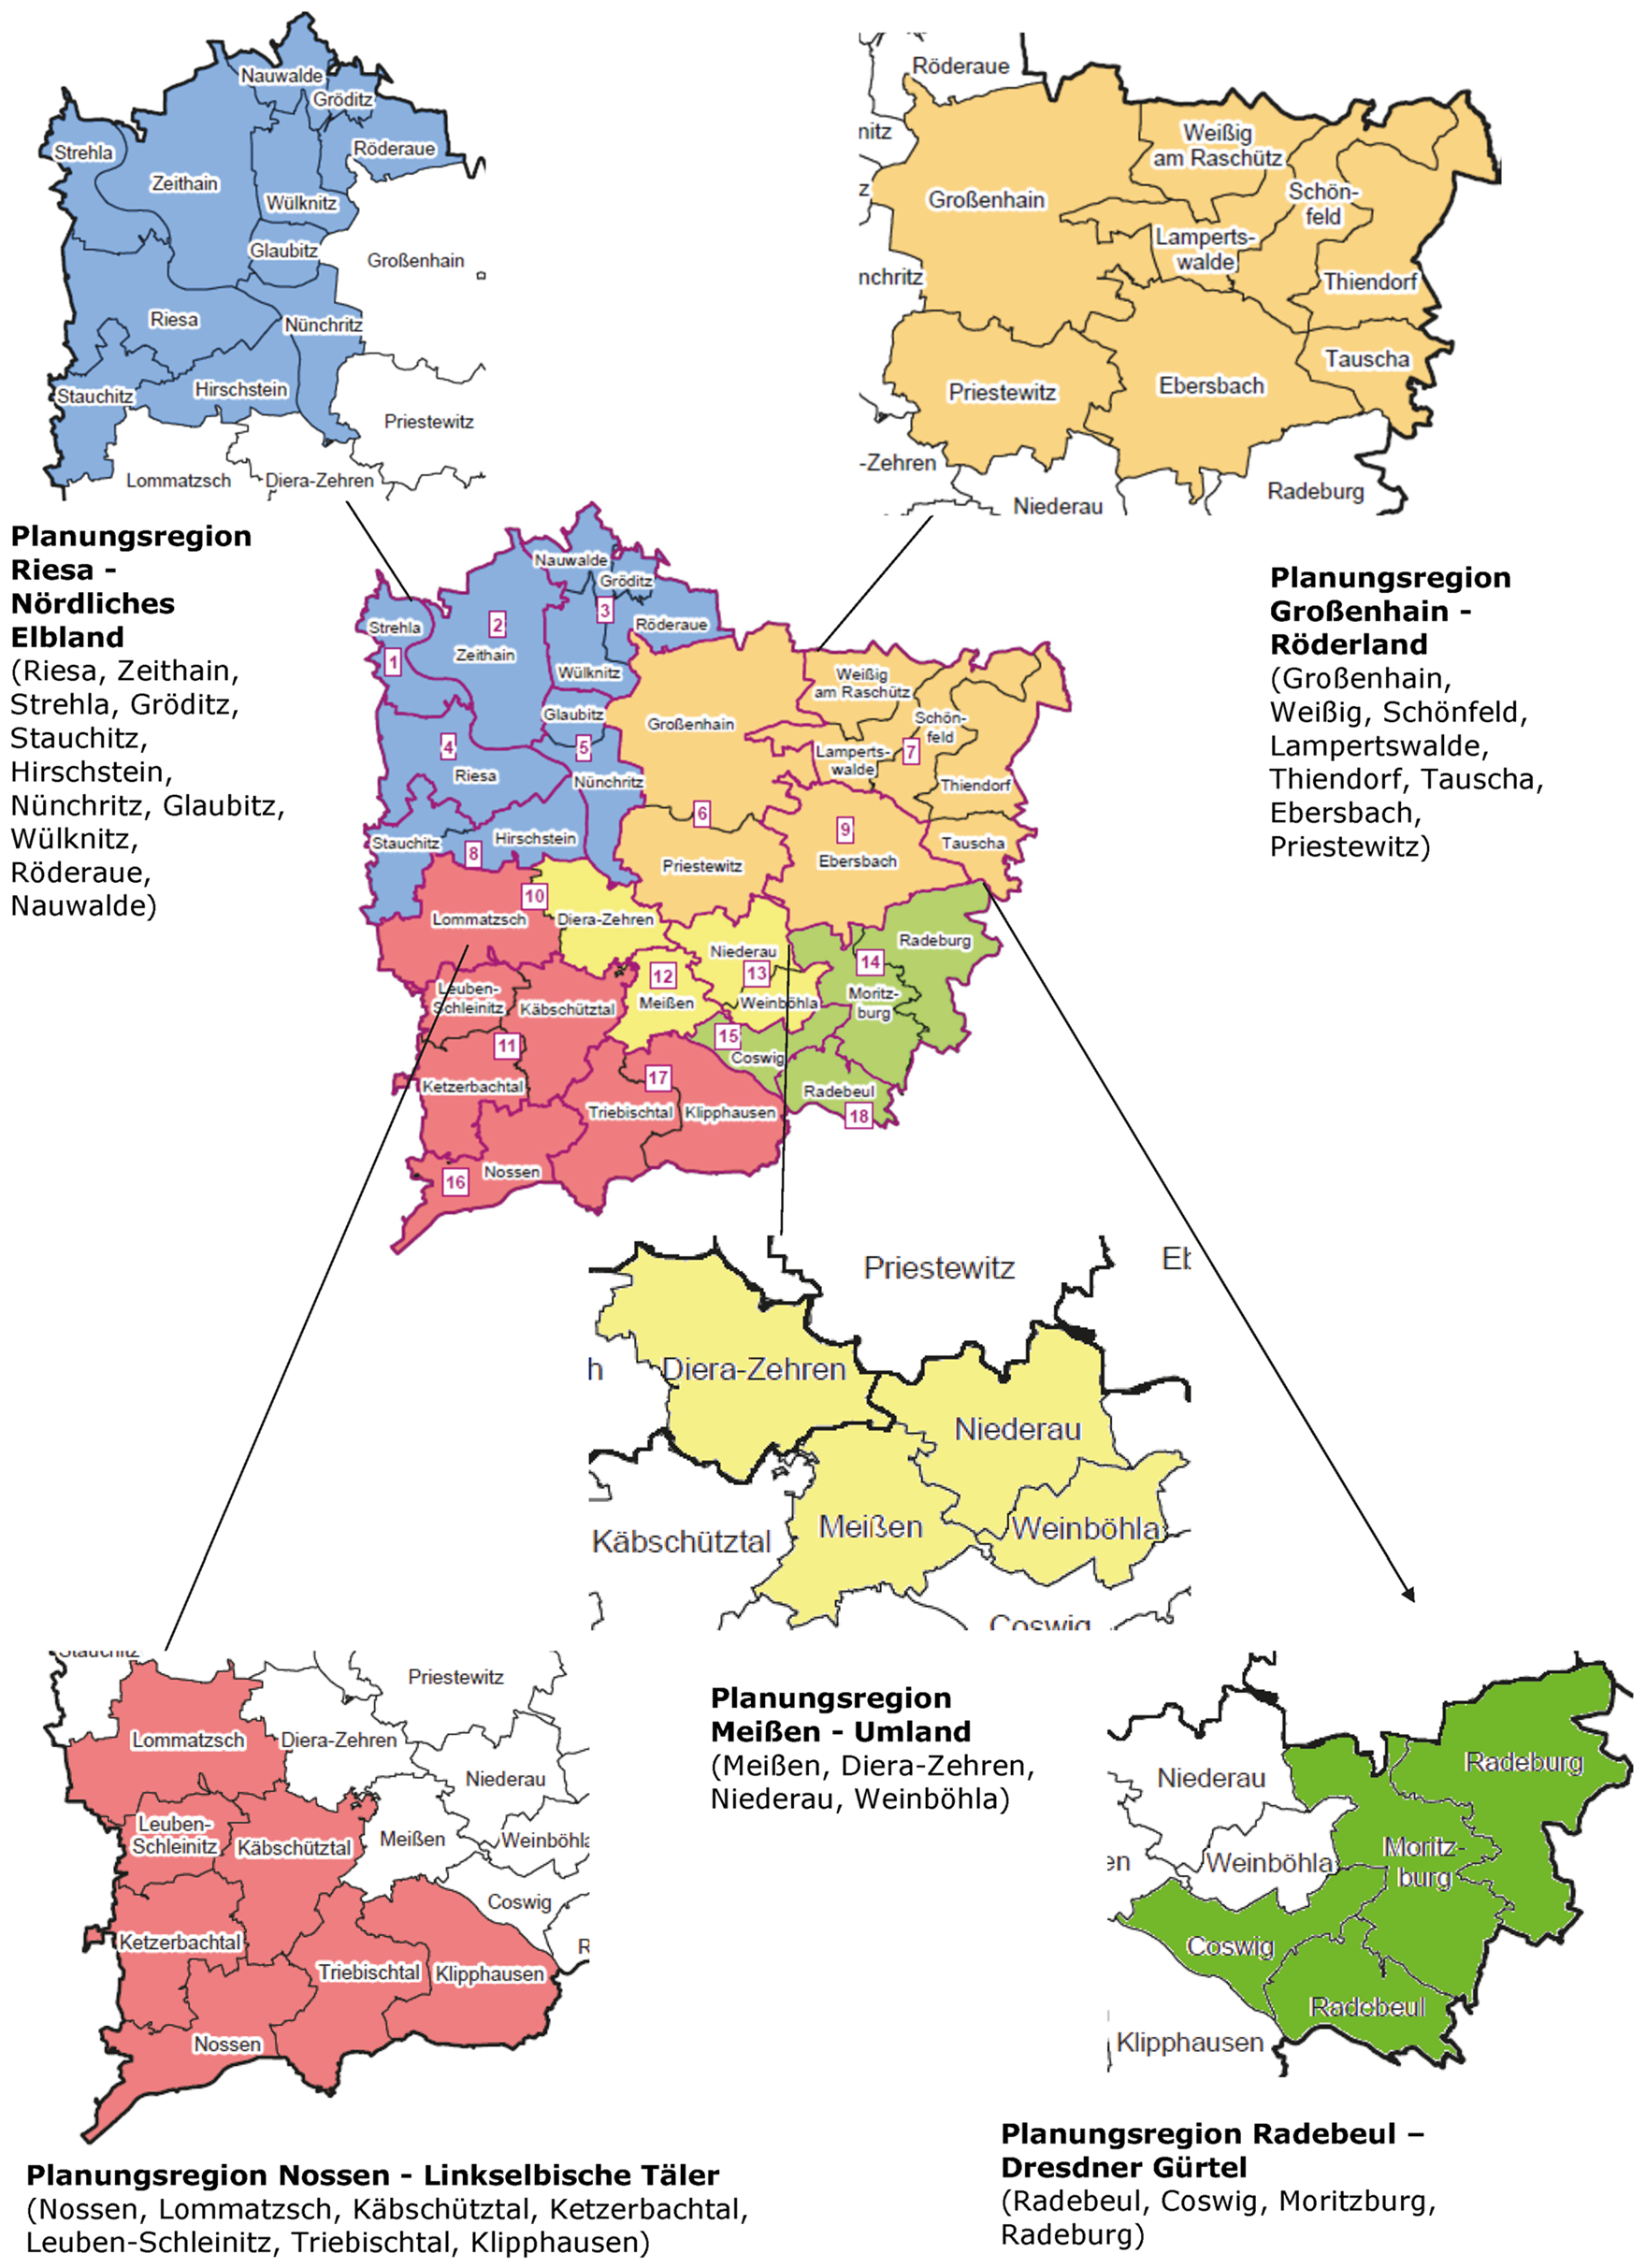 Die Abbildung zeigt die fünf Planungsregionen farblich abgegrenzt in Form einer Landkarte.